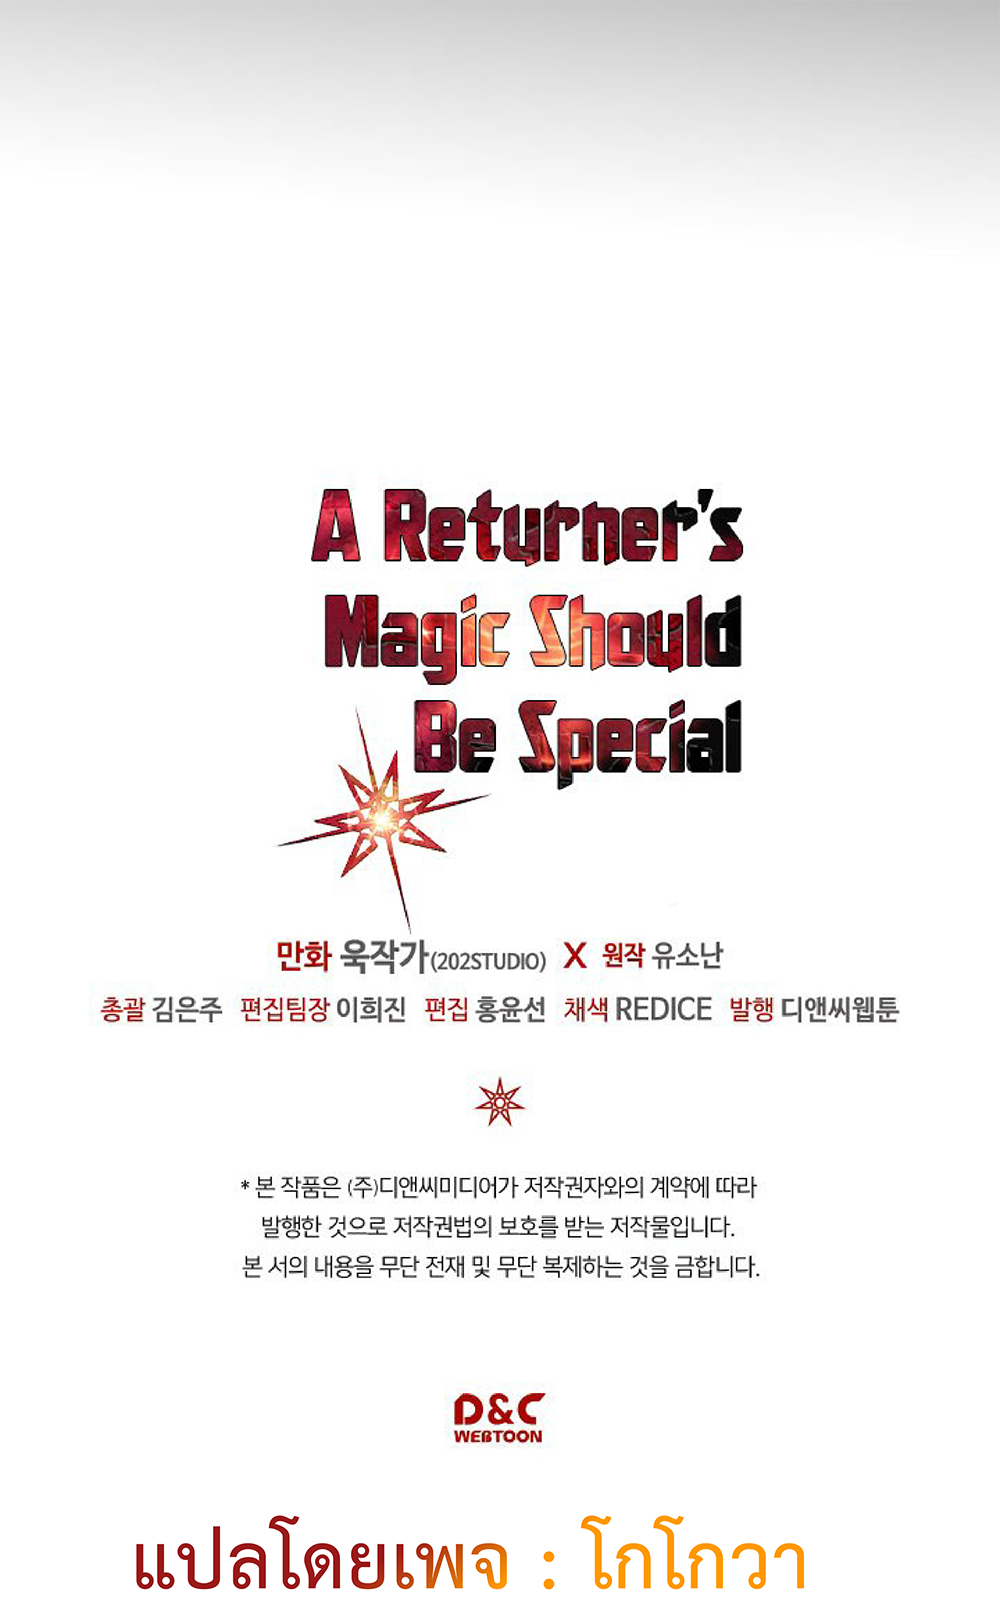 A Returner's Magic Should Be Special 112-112